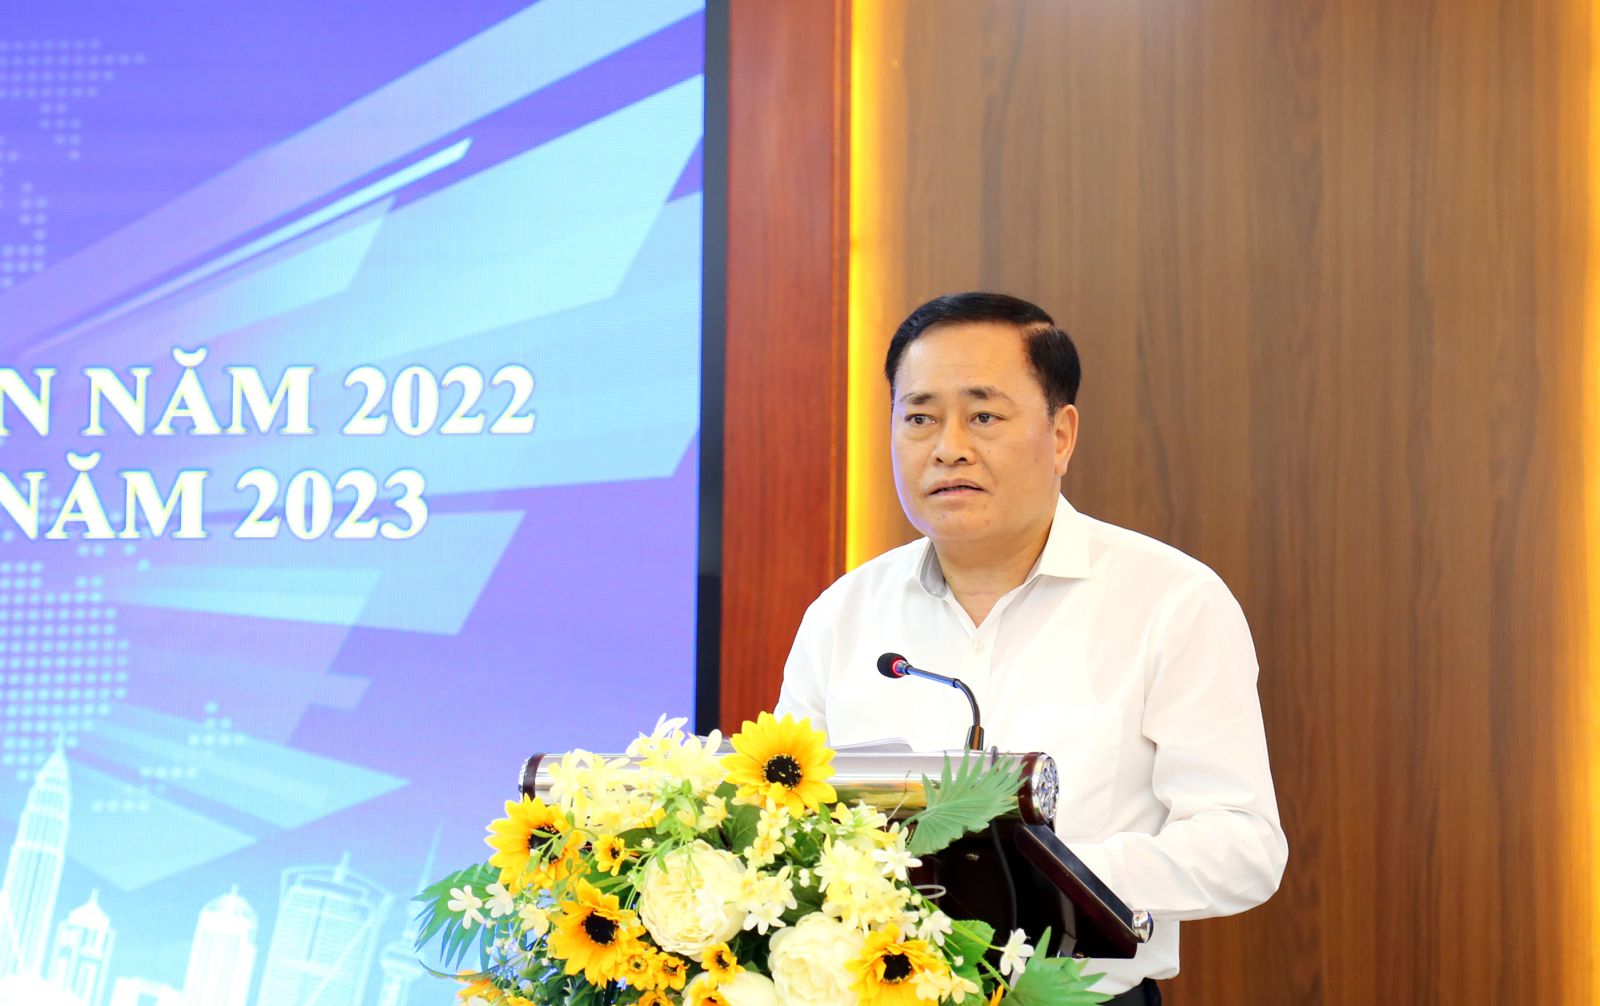 Ông Hồ Tiến Thiệu - Phó Bí thư Tỉnh ủy, Chủ tịch UBND tỉnh Lạng Sơn phát biểu tại Hội nghị sáng 19.05